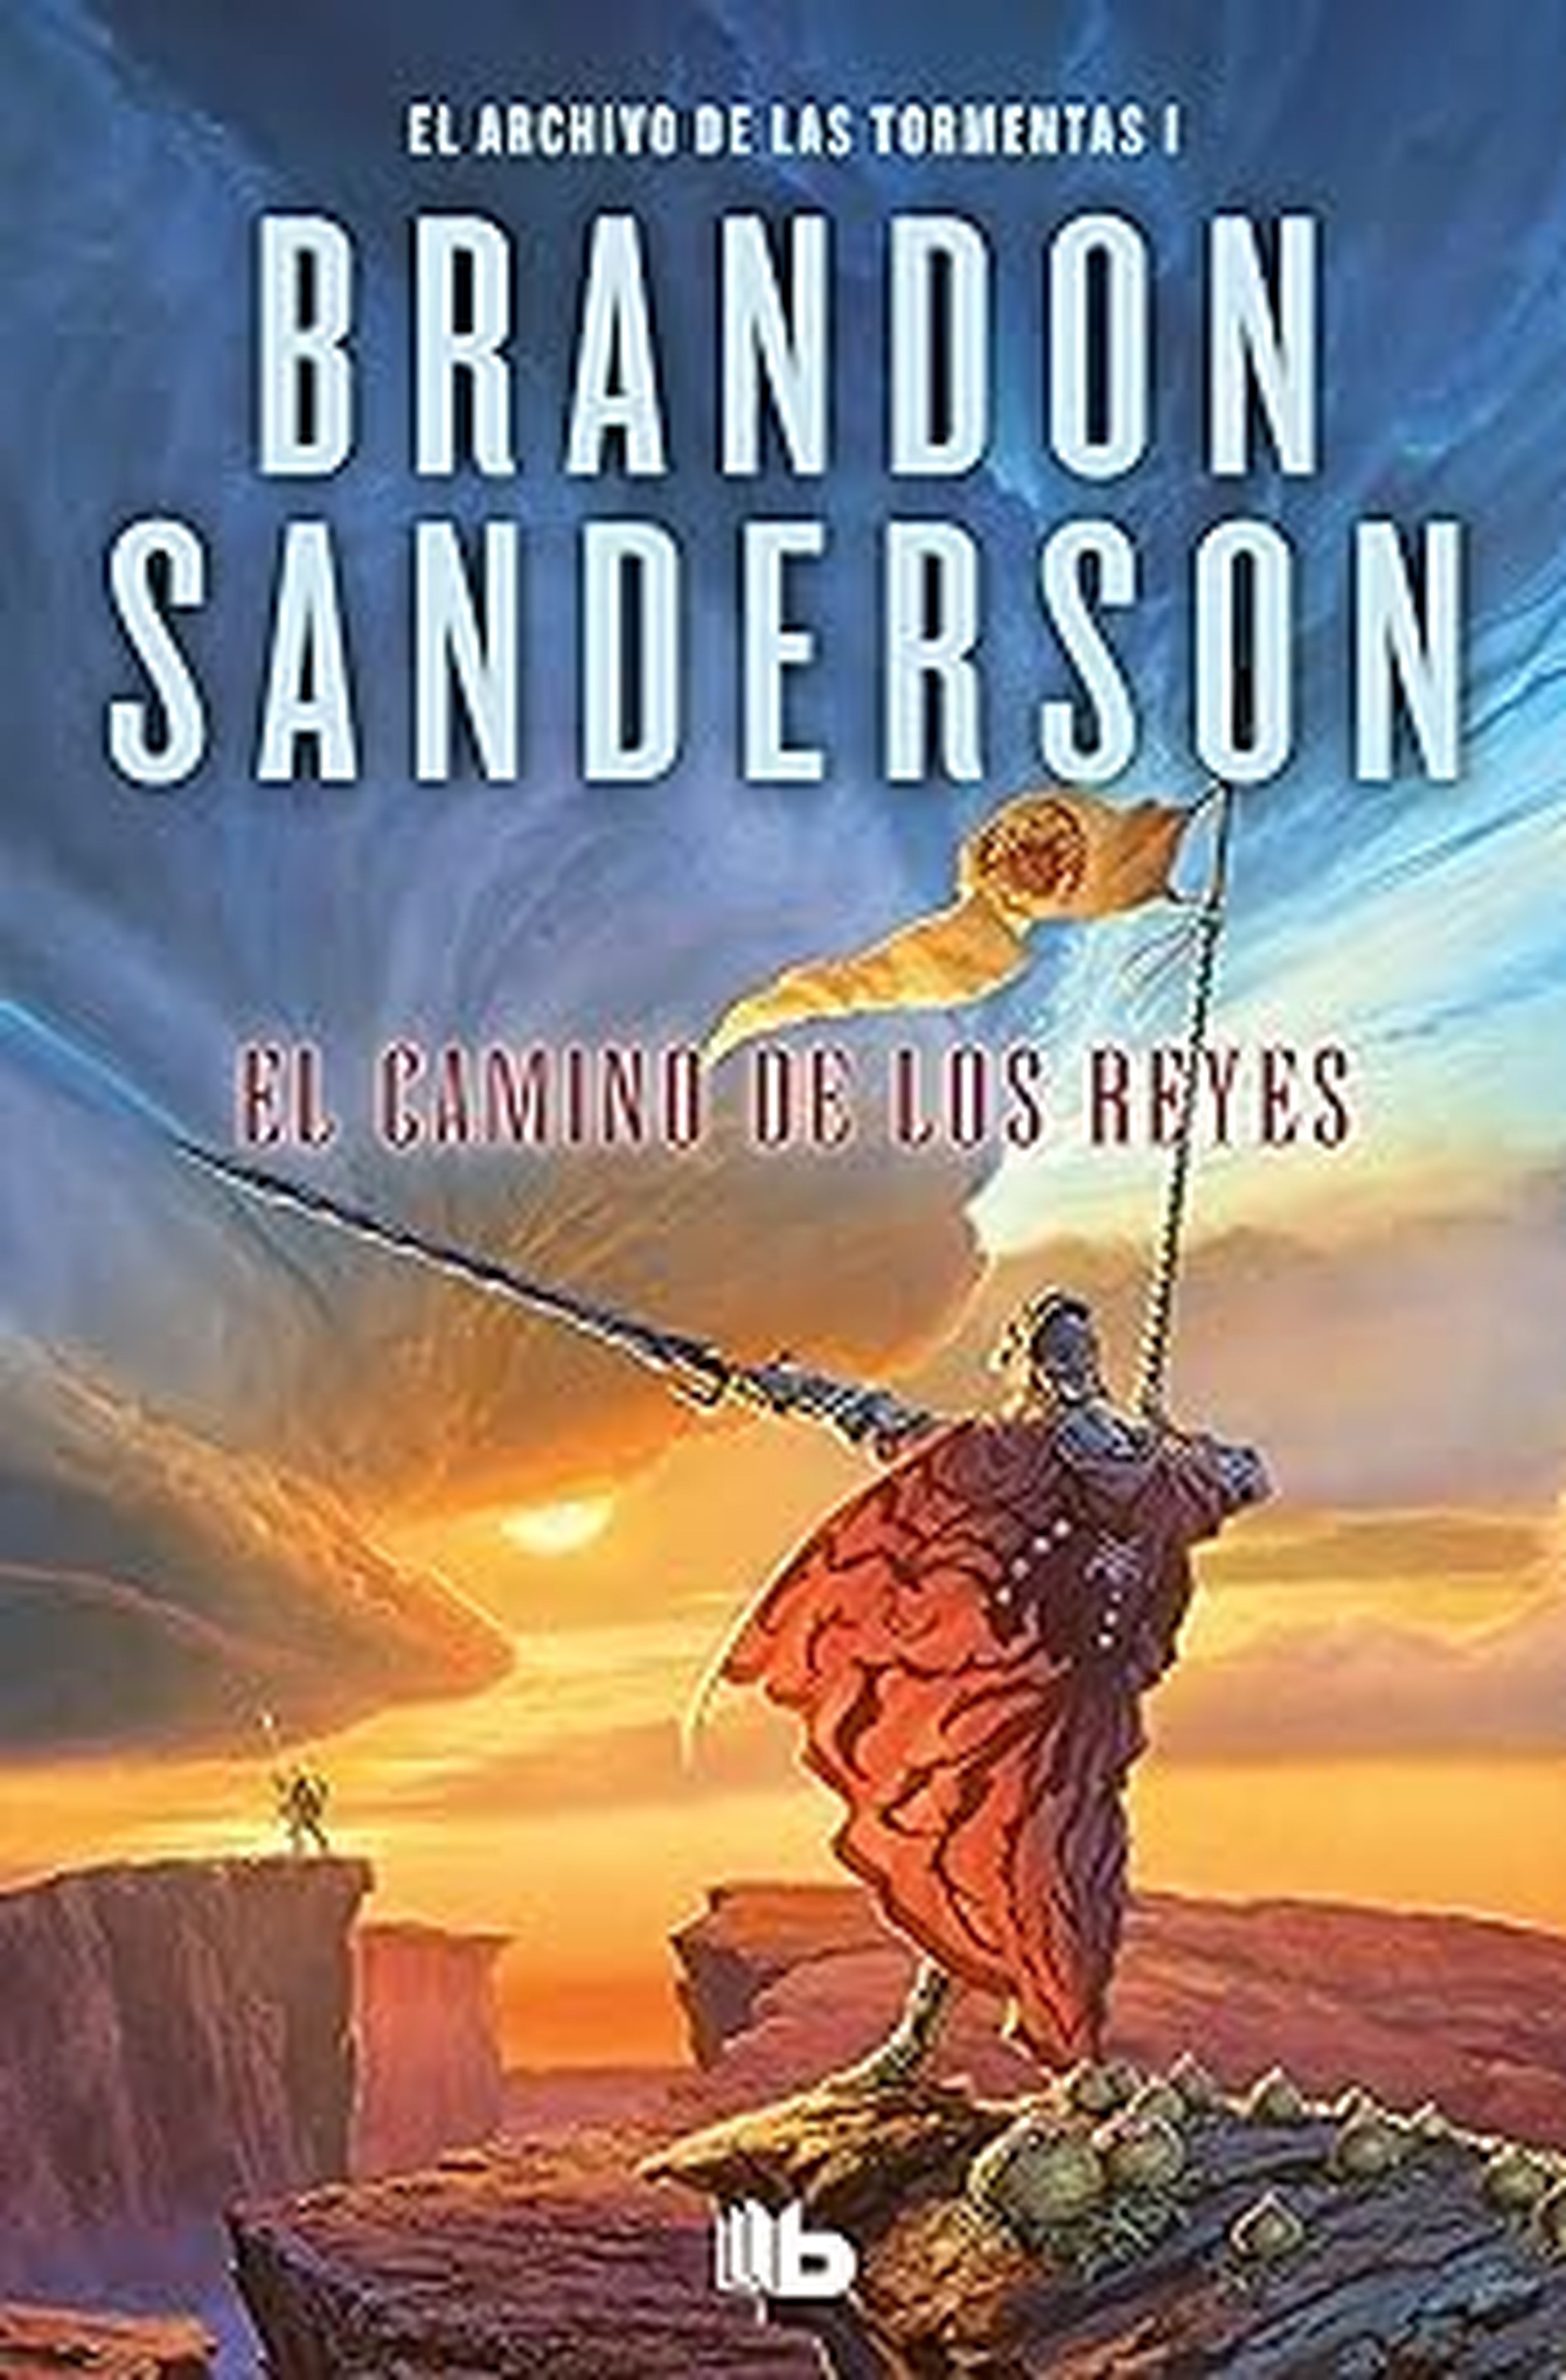 Estos son los mejores libros de Brandon Sanderson según Goodreads